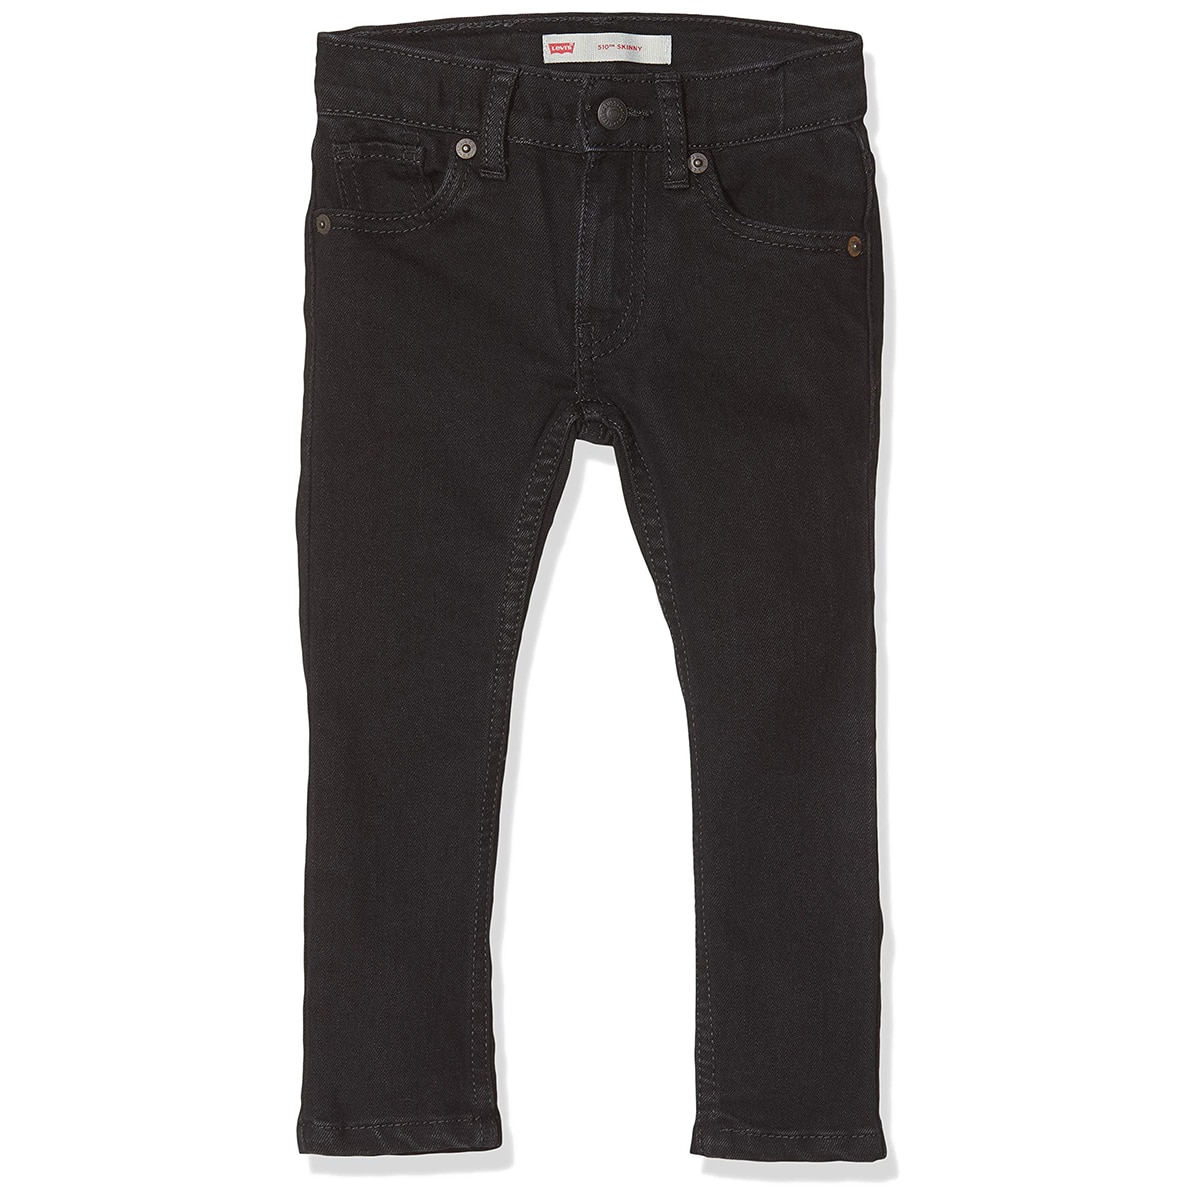 Pantalon Jeans Levi’s Kids Lvb 510 Skinny Fit Class Black Stretch (noir)